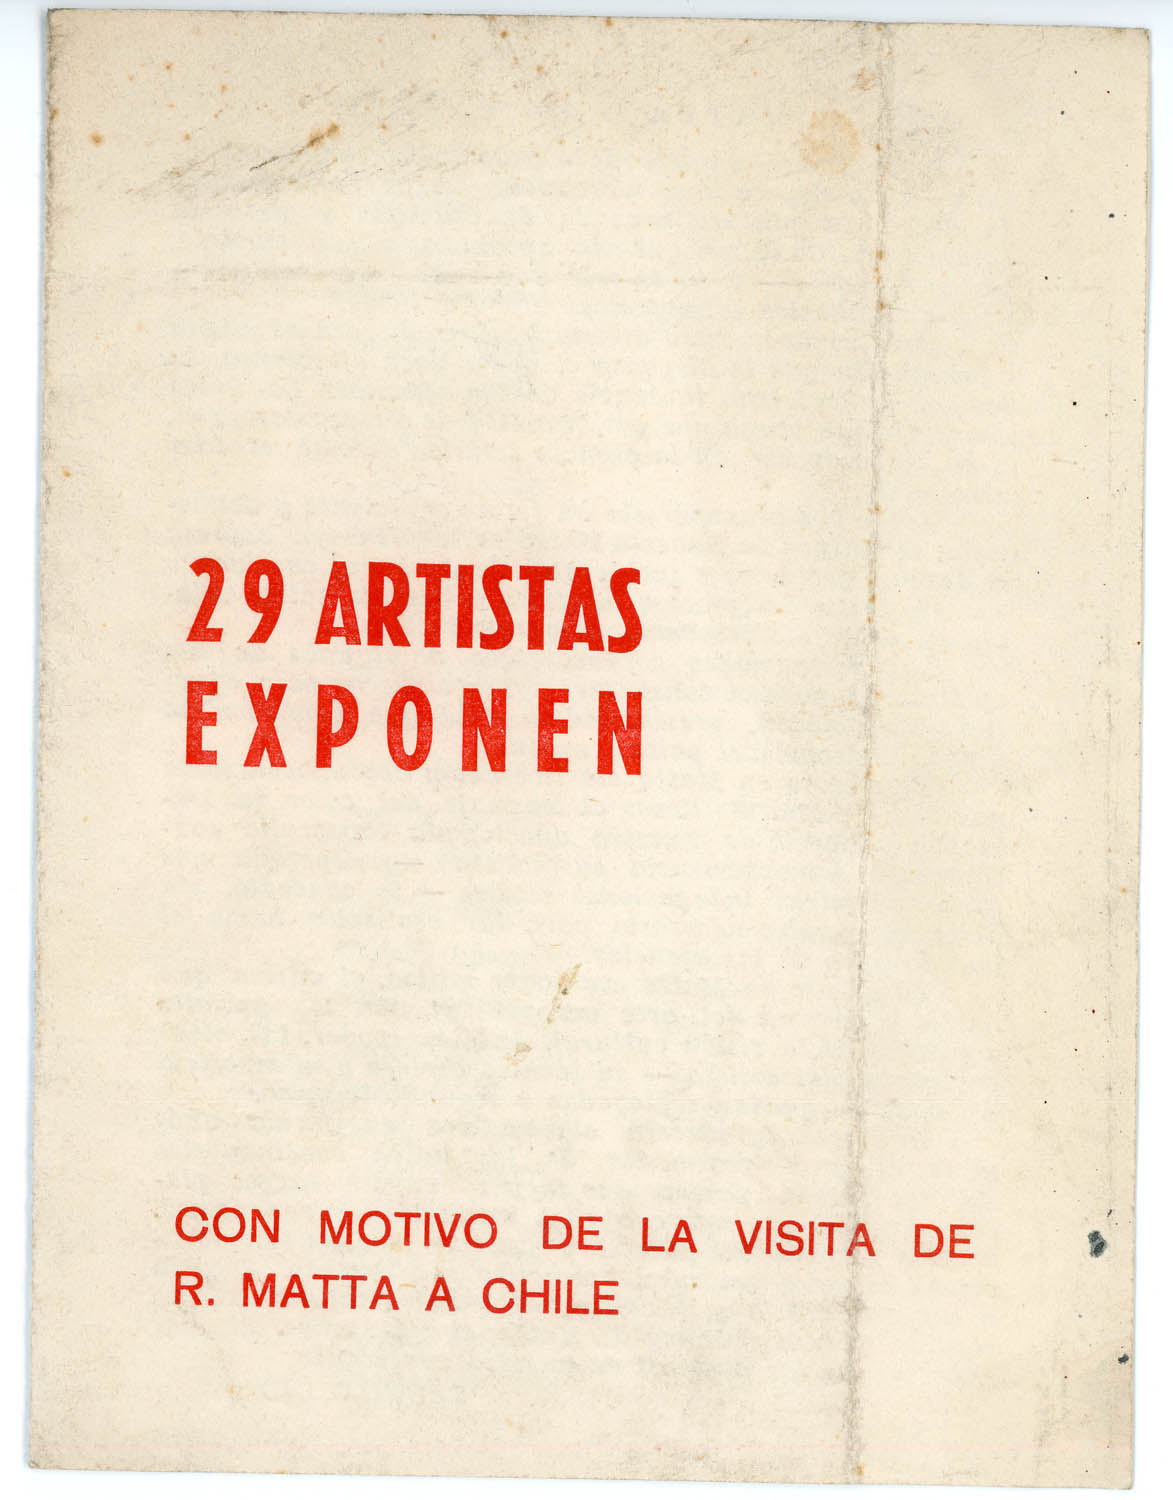 Fundación Nemesio Antúnez “29 Artistas Exponen con